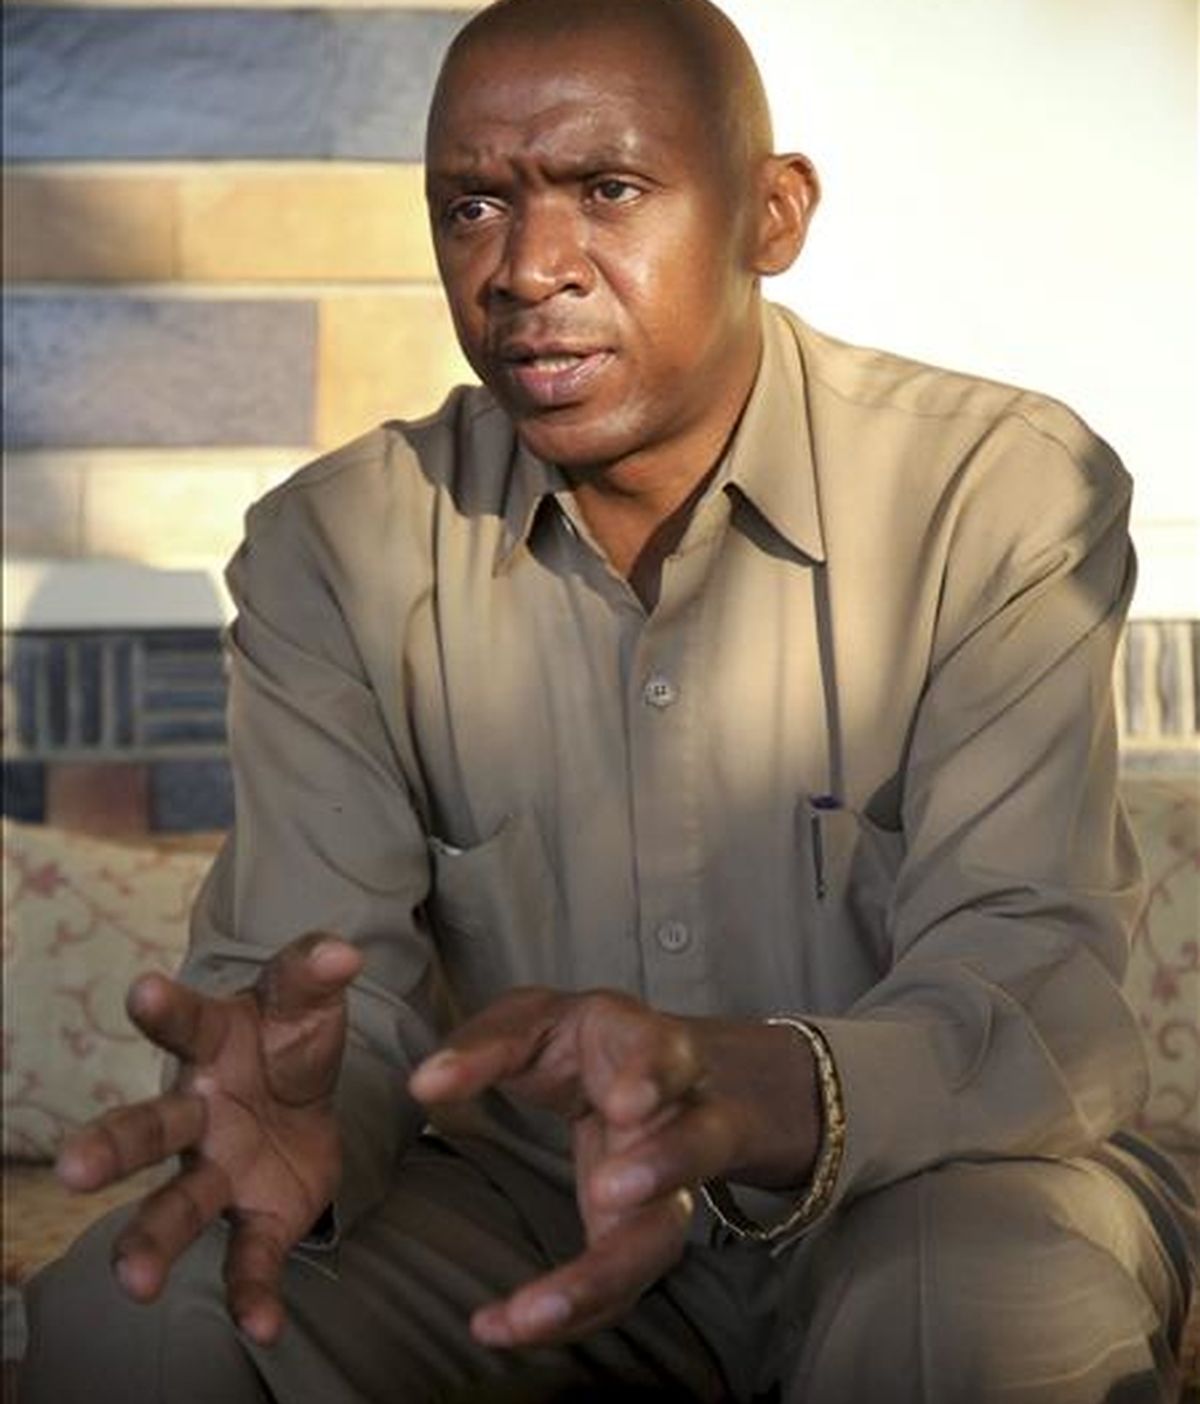 Imagen facilitada el 1 de julio,  que muestra a Agathon Rwasa, líder rebelde, líder de las Fuerzas para la Liberación Nacional (FNL) y candidato a las elección presidenciales de Burundi, que huyo del país tras recibir amenazas. EFE/Archivo